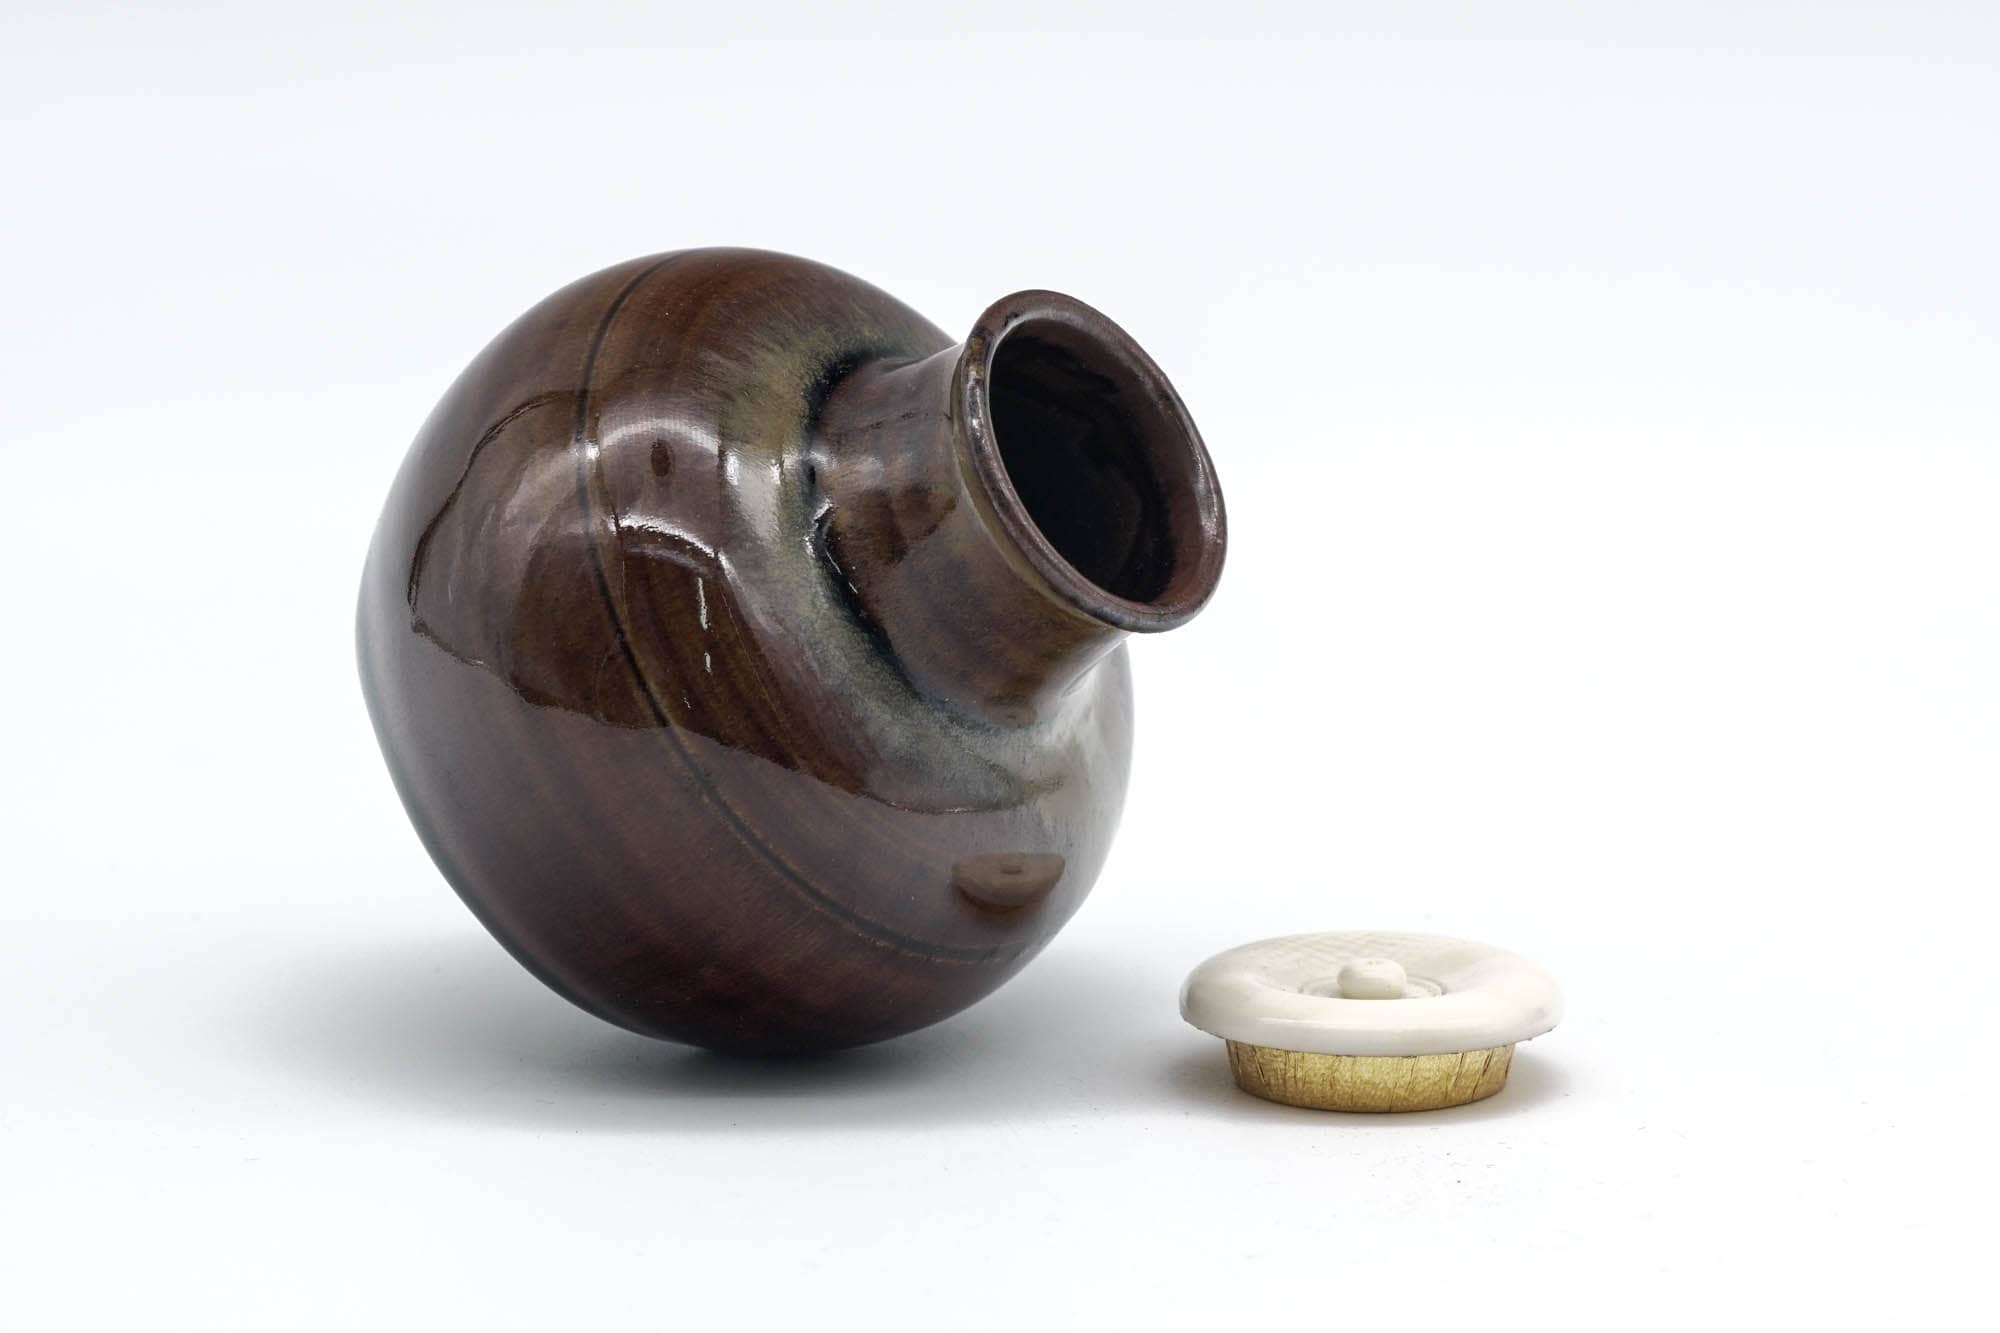 Japanese Chaire - 元永彰一 Motonaga Shōichi - Brown Drip-Glazed Marutsubo Takatori-yaki Tea Jar with Shifuku